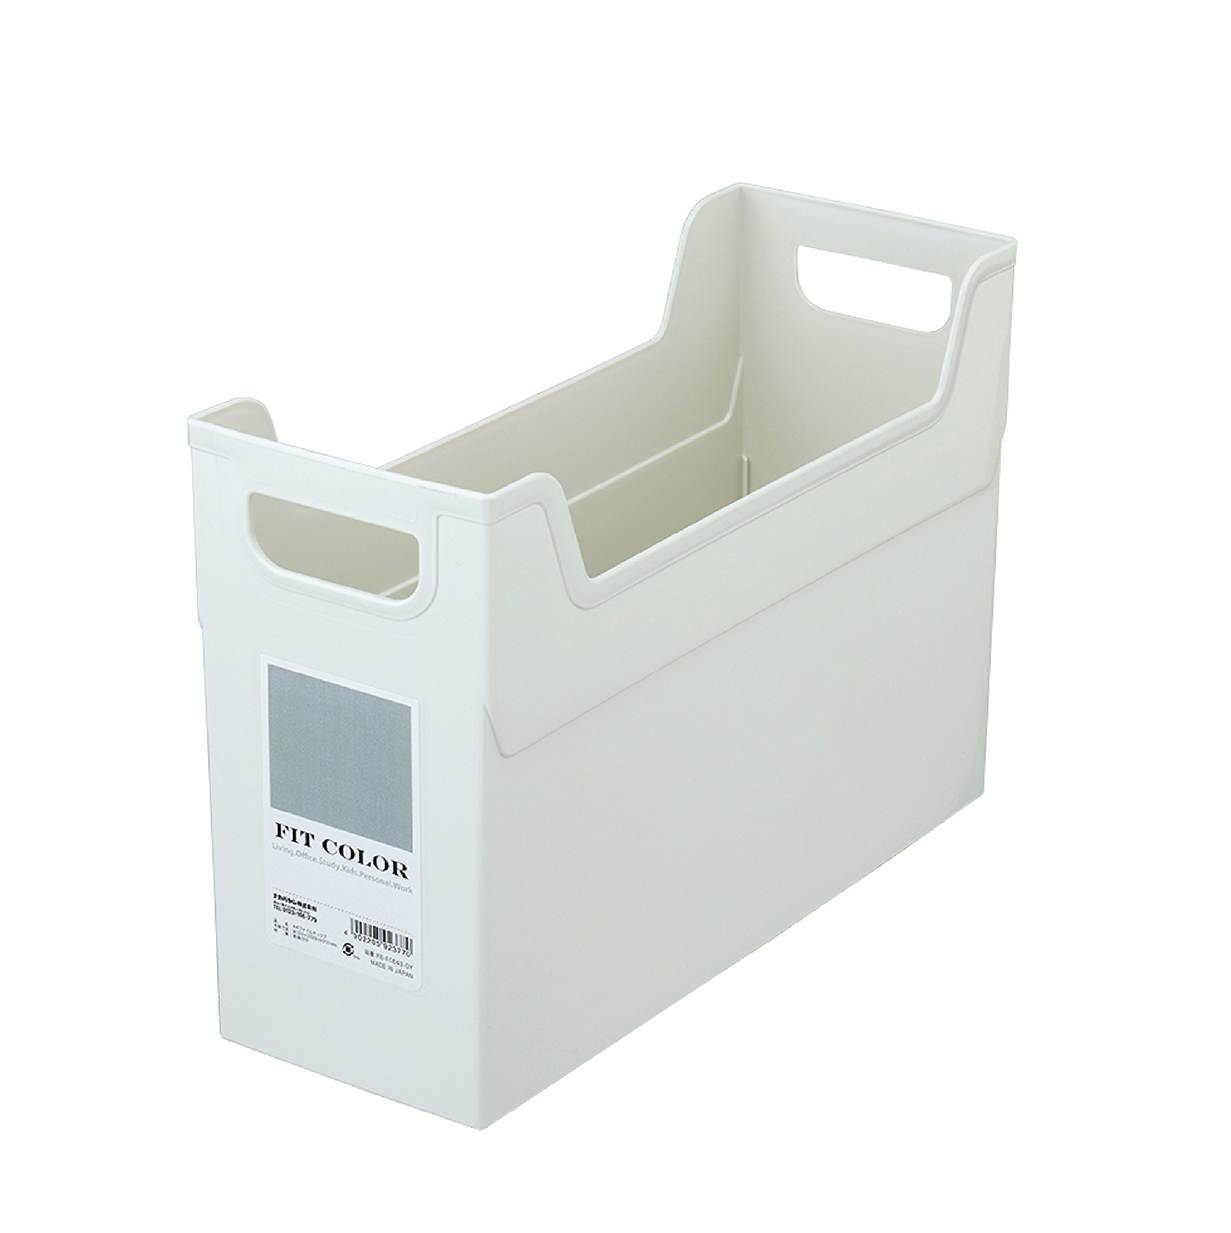 NCL Fit-Colour Storage File Box (S) Light Grey